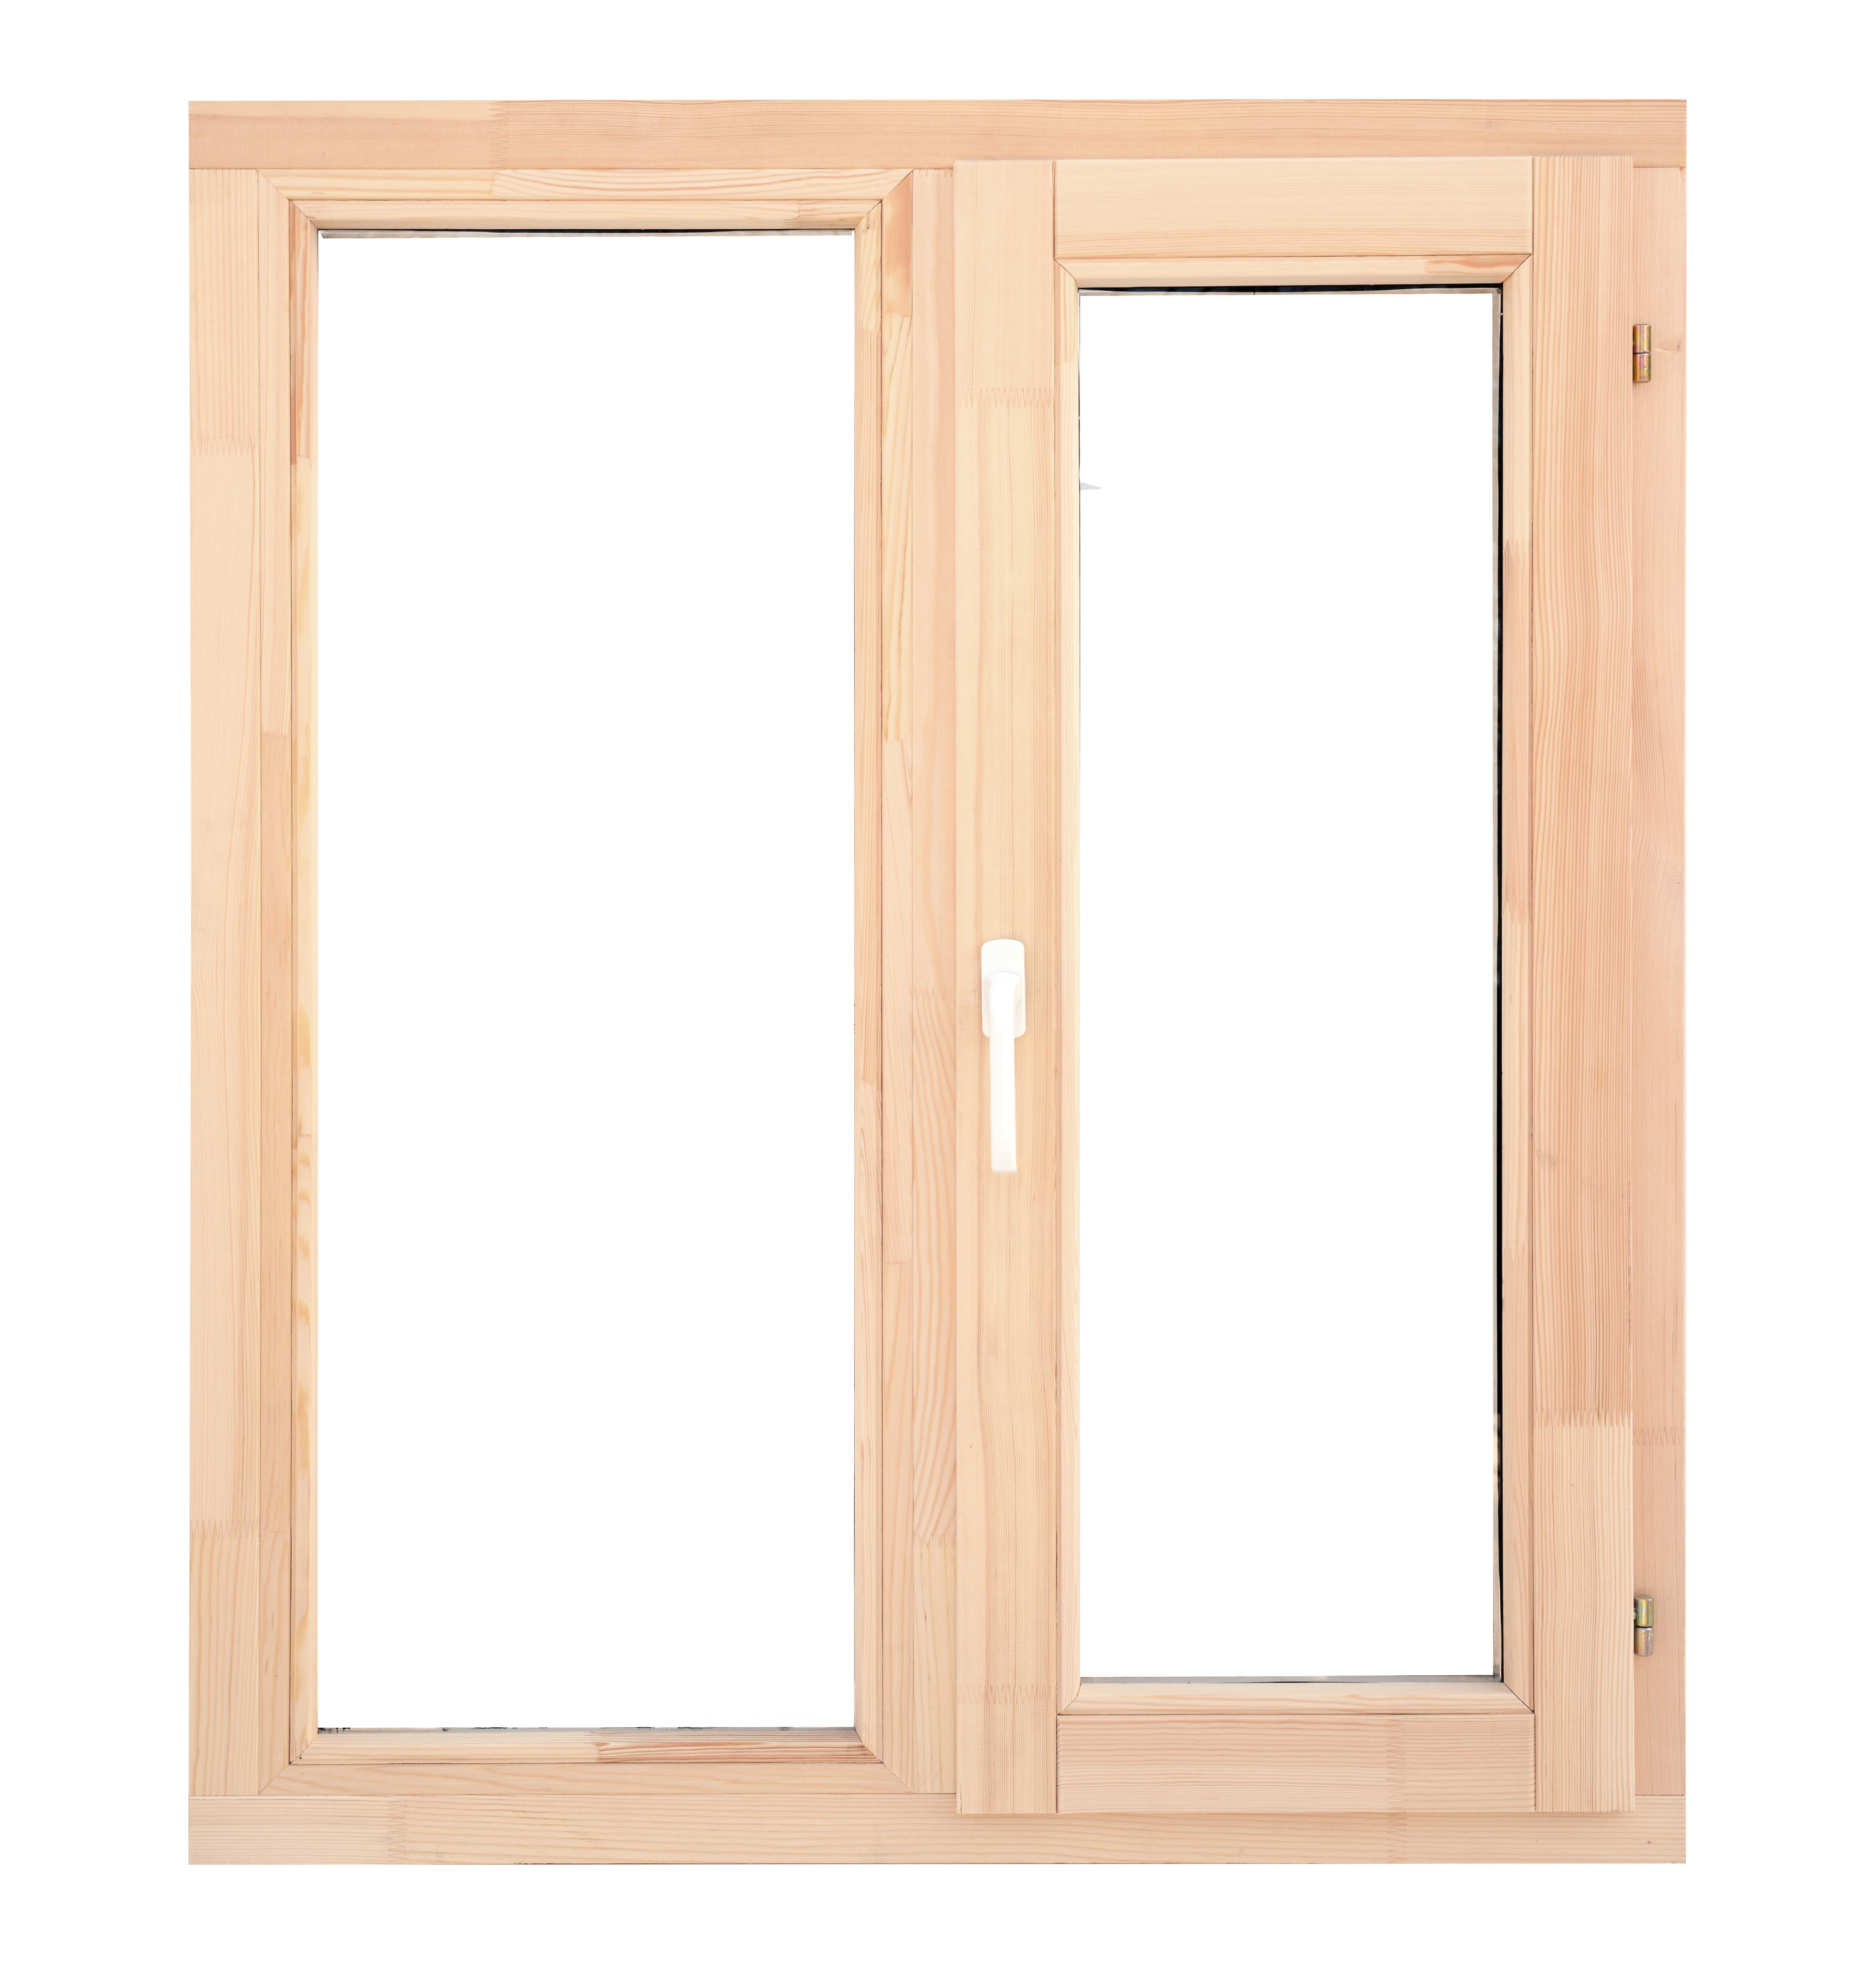 Ремонт деревянных окон со стеклопакетами